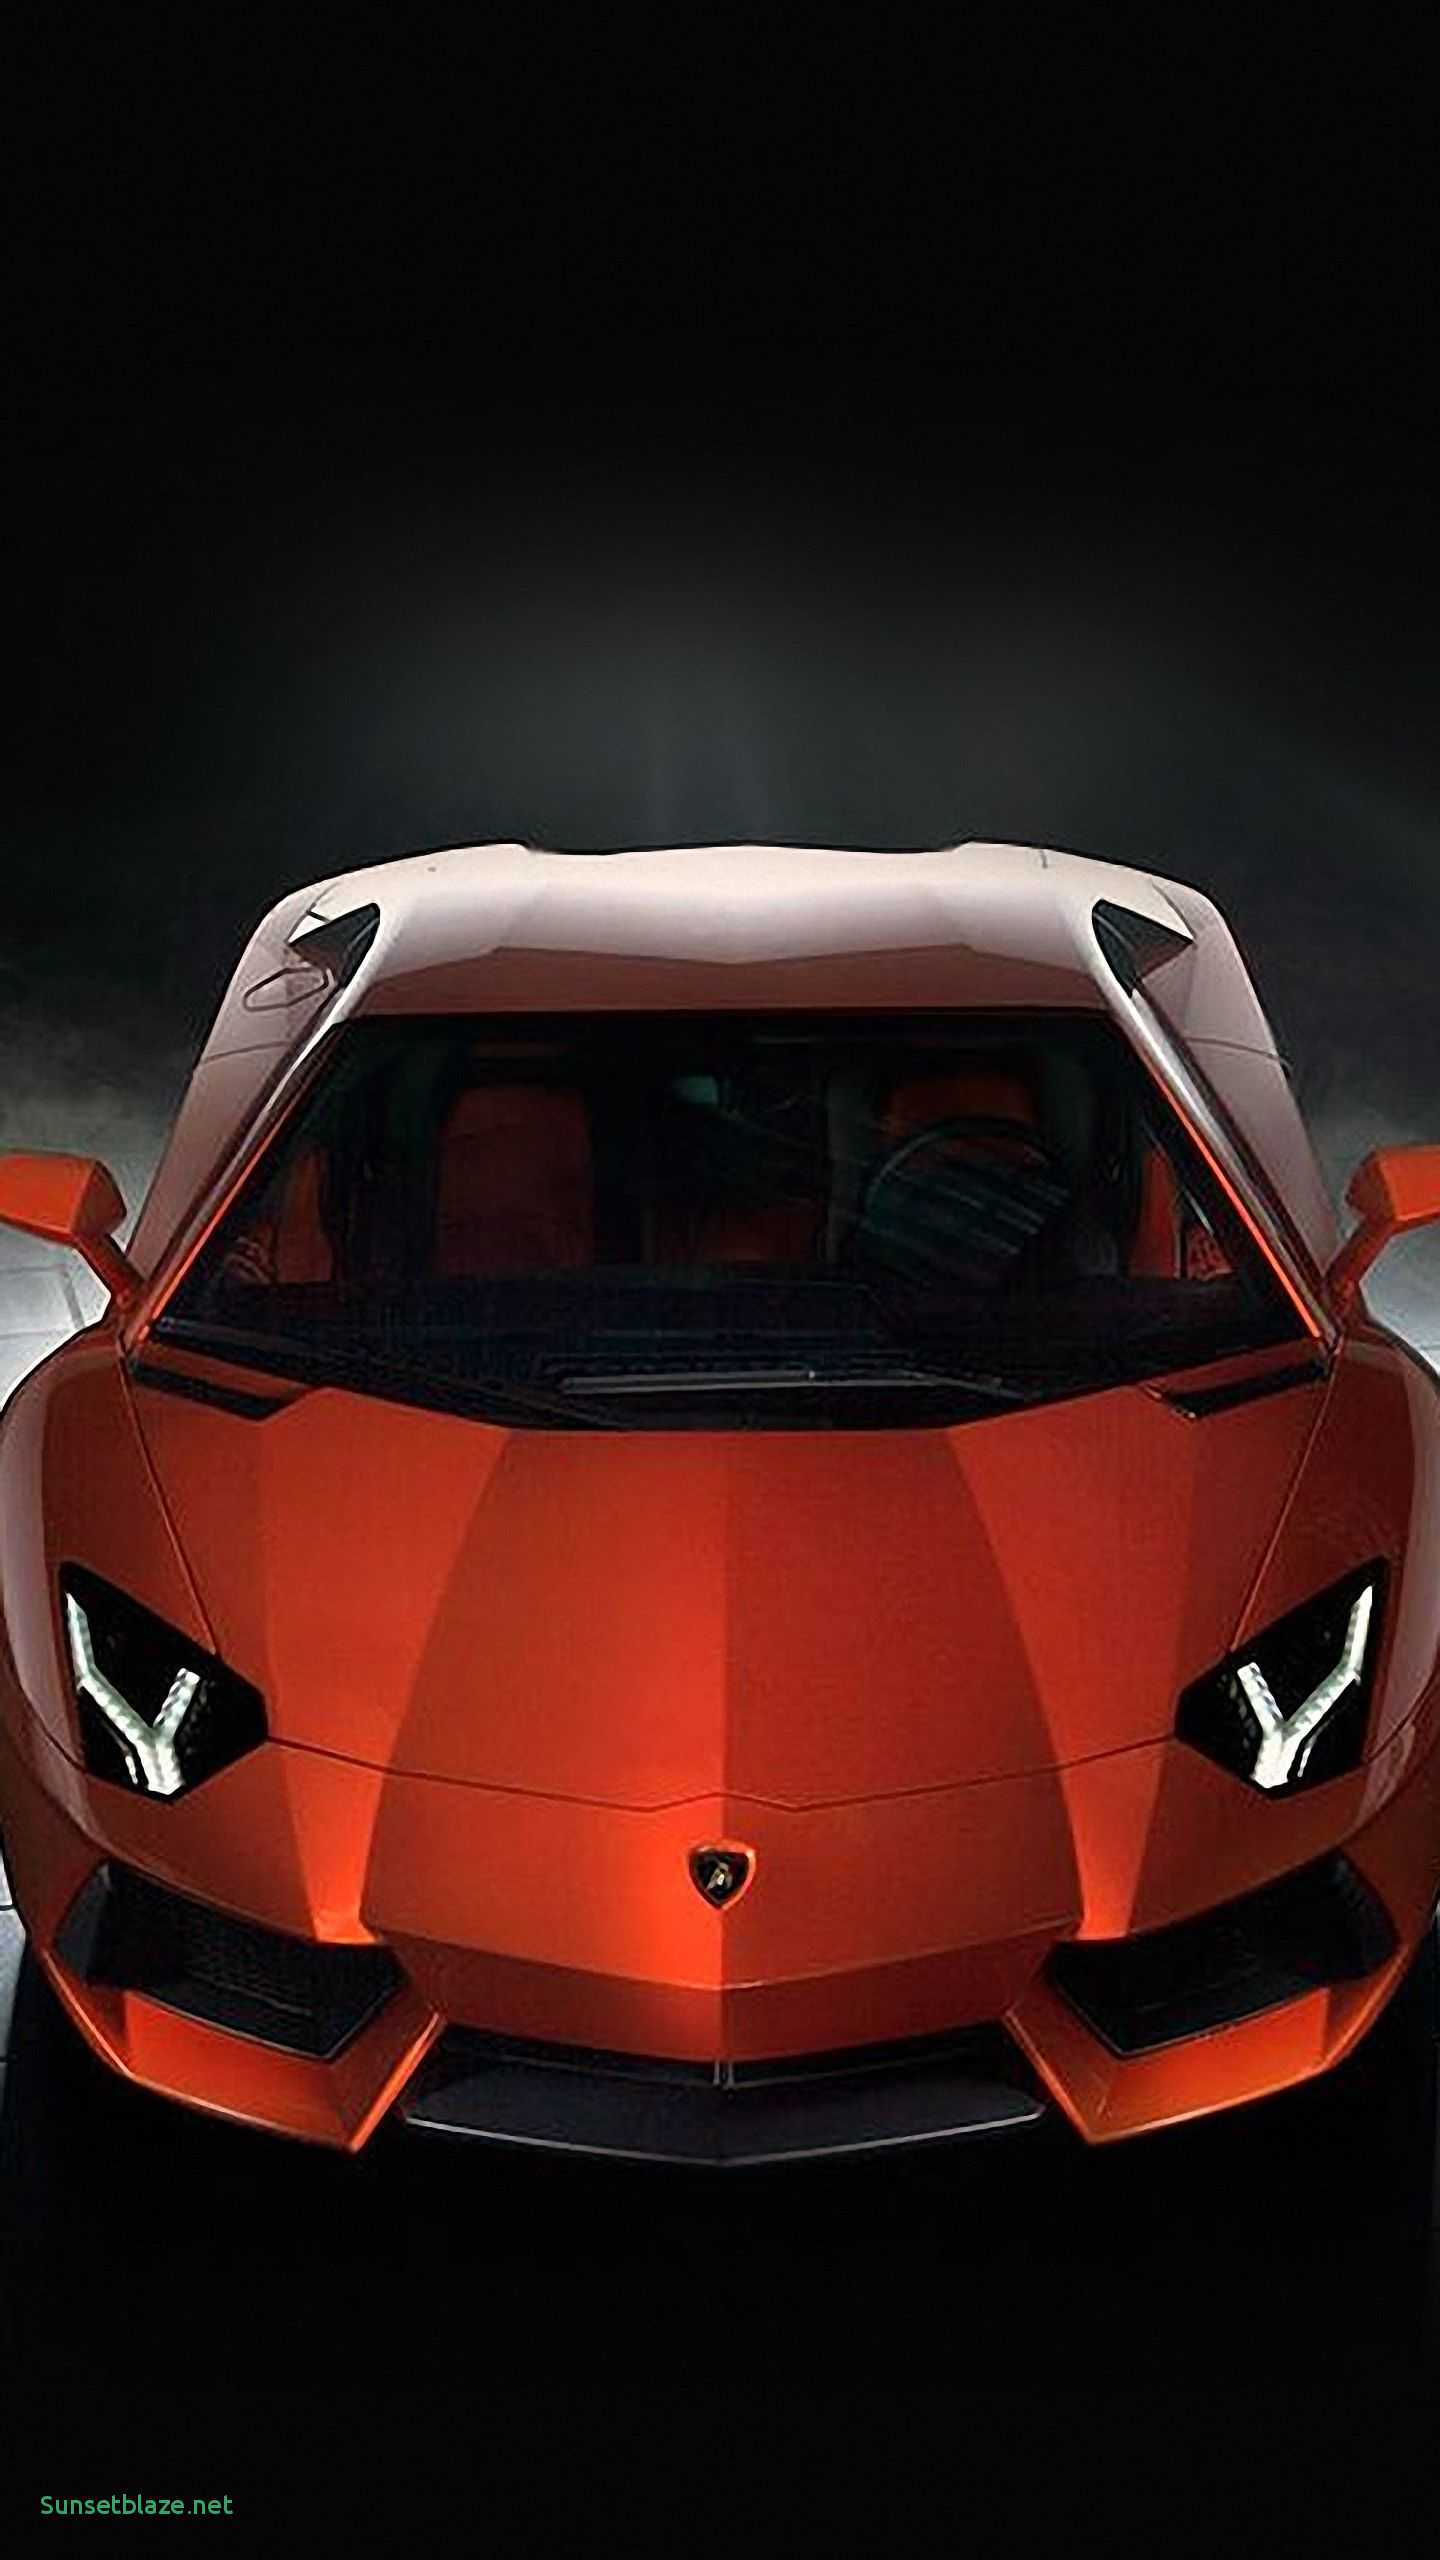 Wallpaper Of Lamborghini Cars